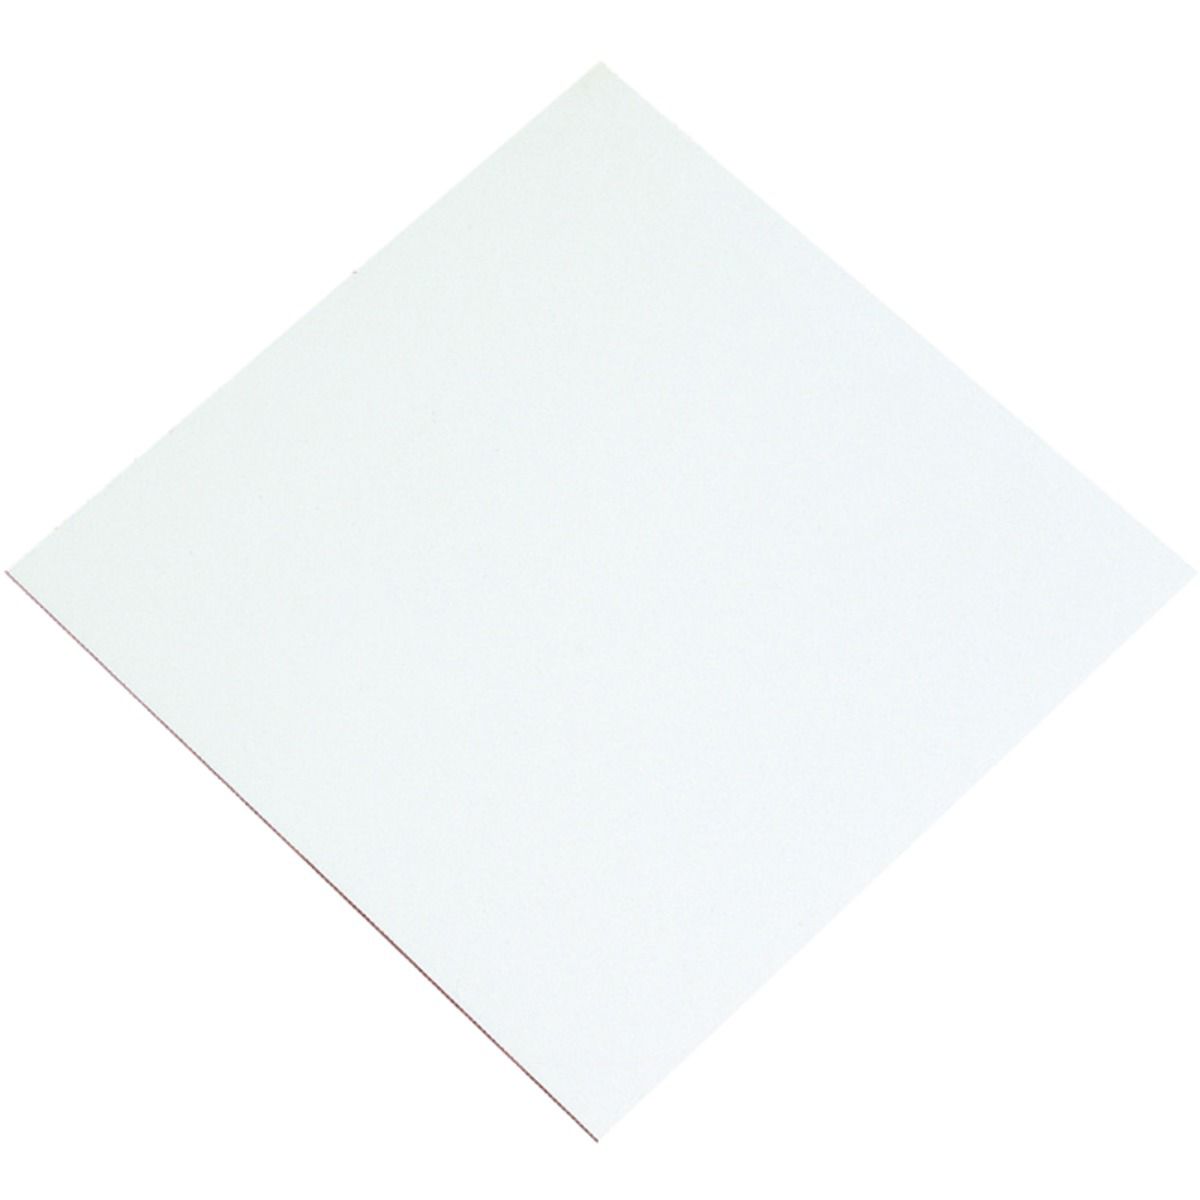 General Purpose White Faced Hardboard Sheet - 3 x 610 x 1220mm